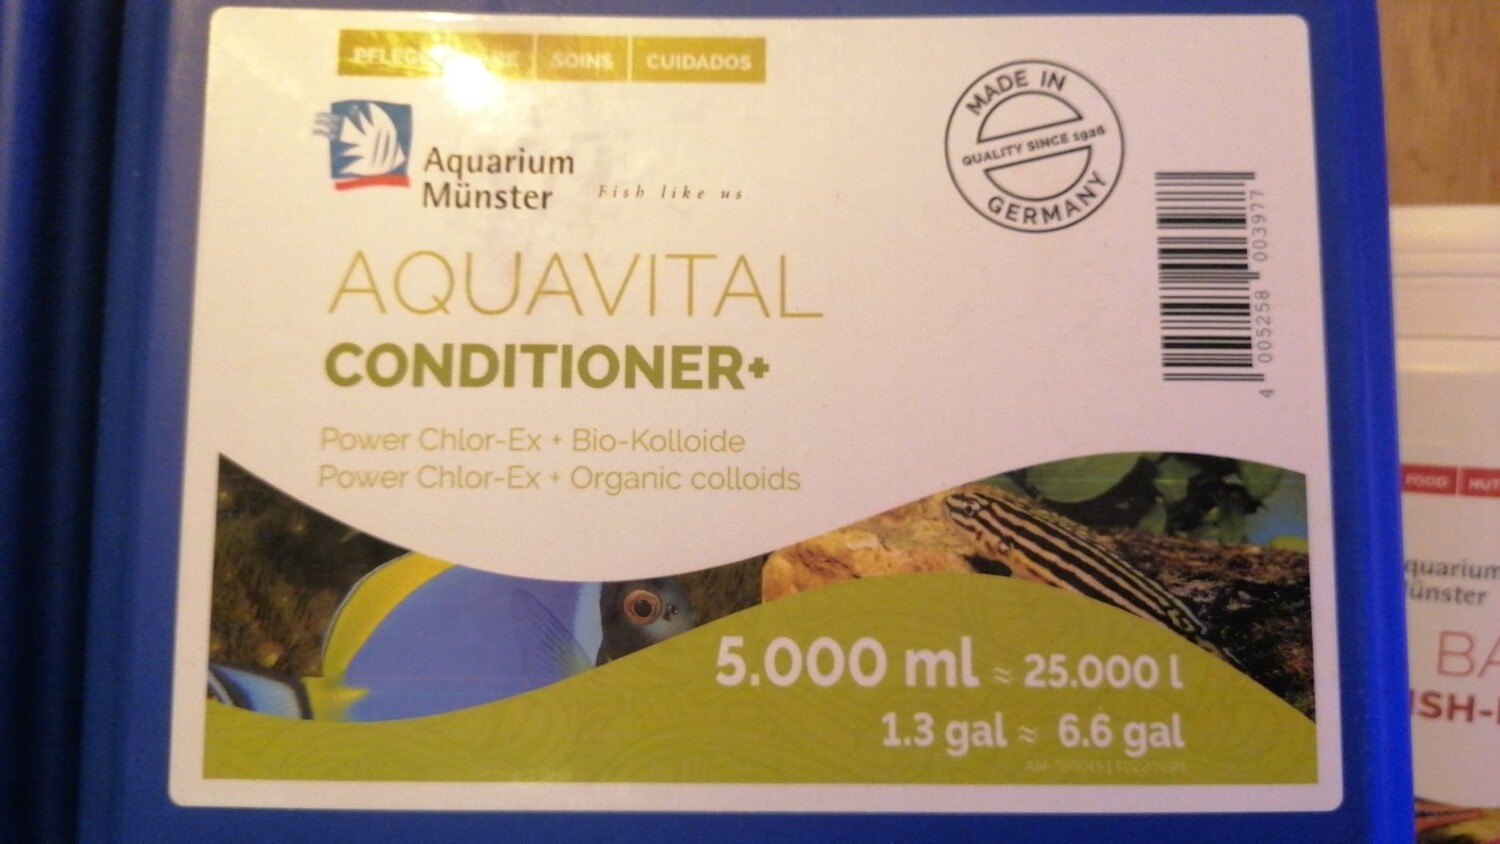 Aquavital conditioner+